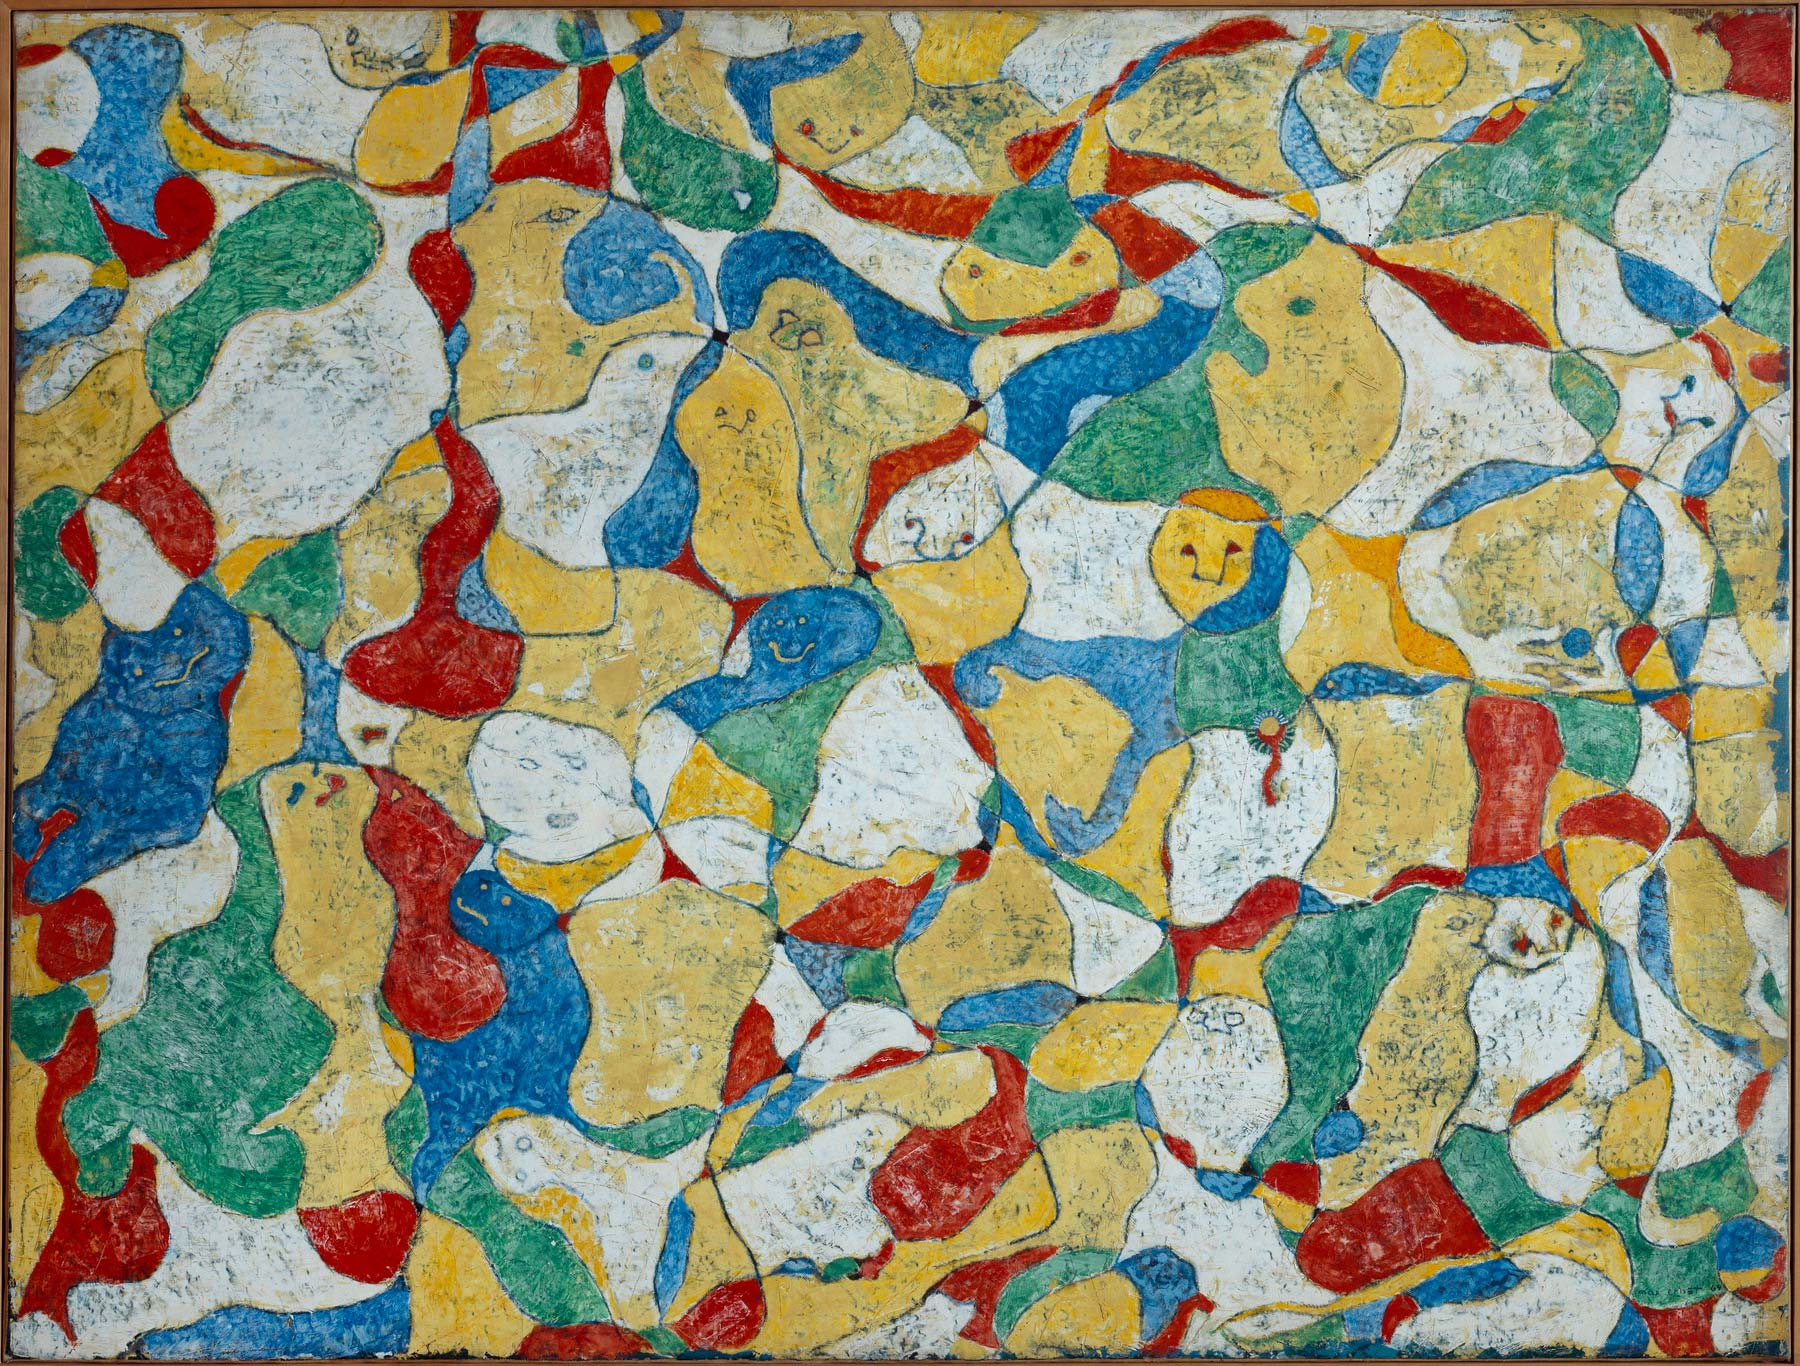 Max Ernst, La festa a Seillans (1964; olio su tela, 130 x 170 cm; Parigi, Centre Pompidou, Musée national d’art moderne/Centre de création industrielle)
